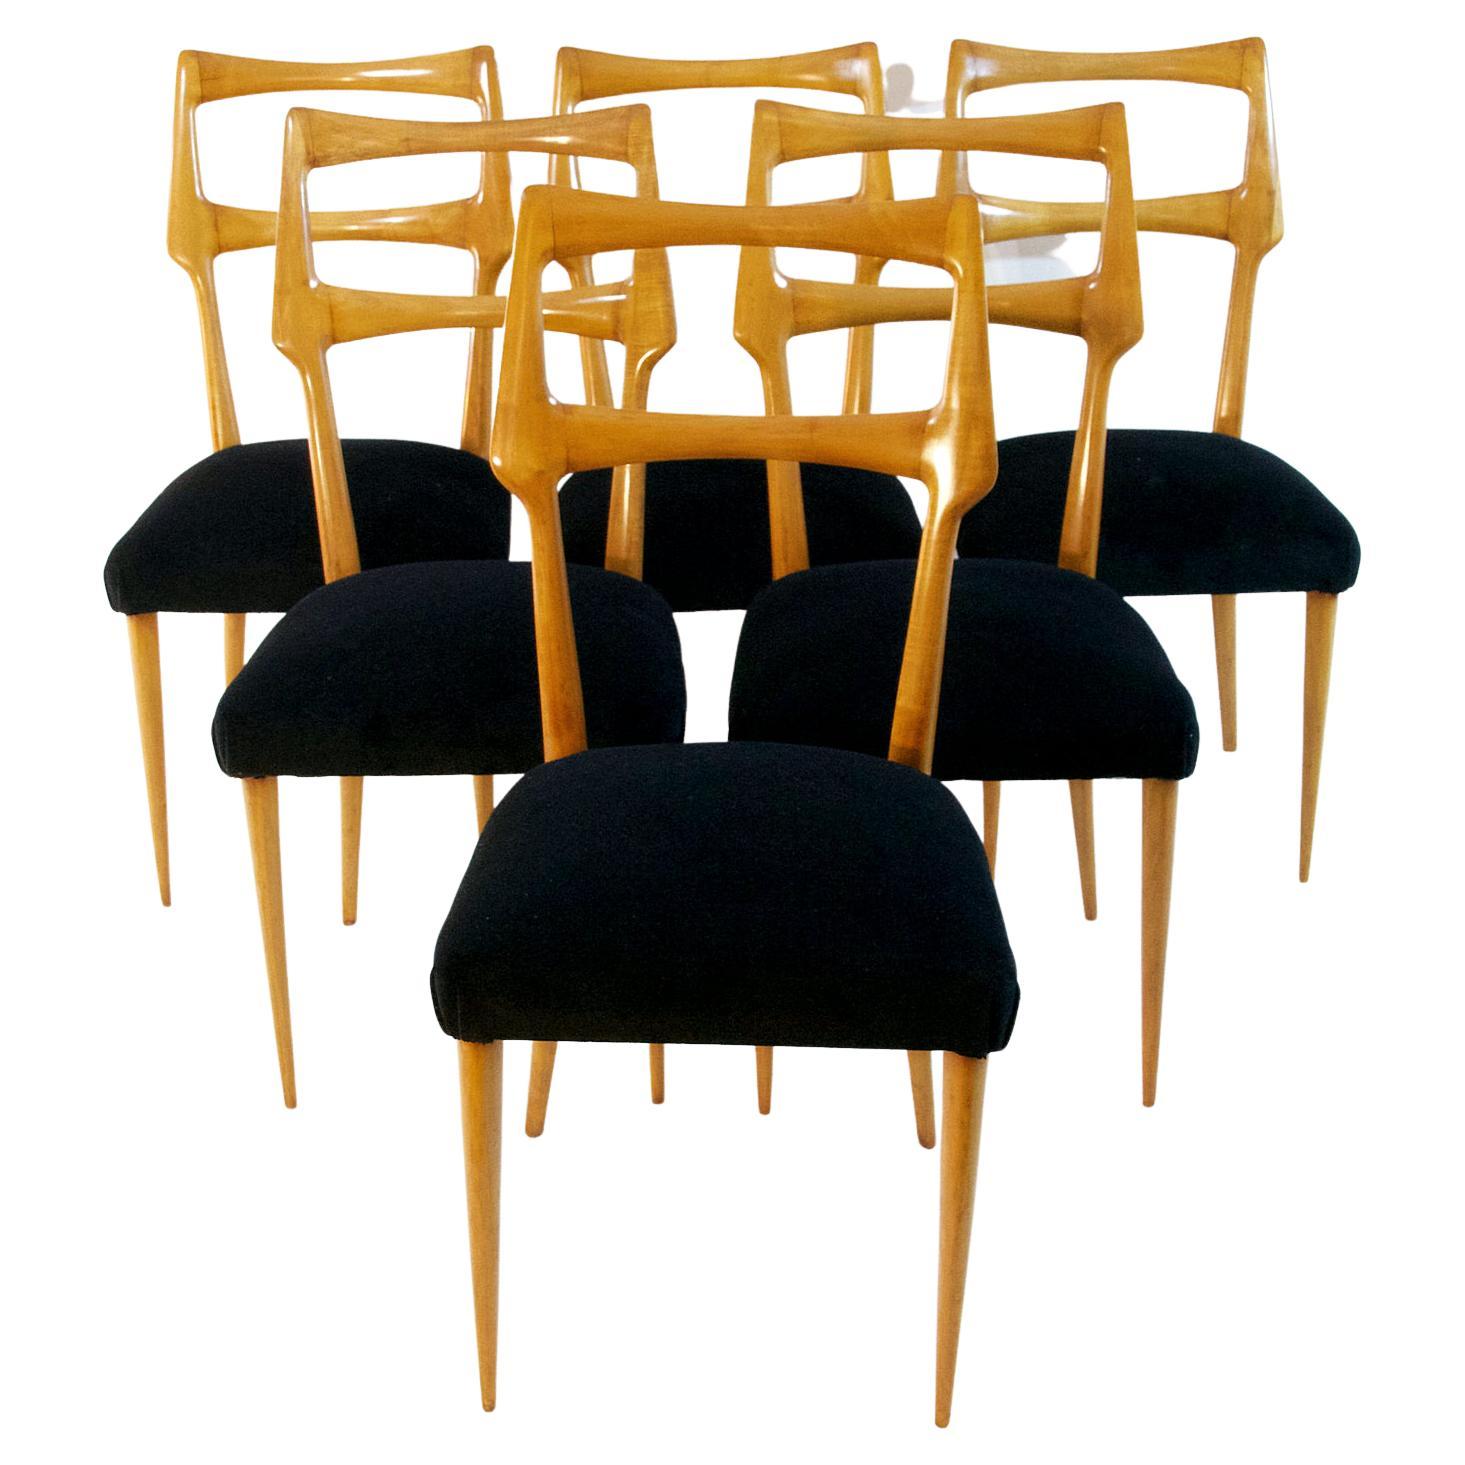 Ein Satz von sechs italienischen Esszimmerstühlen mit einem erhabenen organischen Design aus Ahorn, das Augusto Romano zugeschrieben wird und mit schwarzem Samt neu gepolstert ist. Die Stühle sind von höchster handwerklicher Qualität und befinden